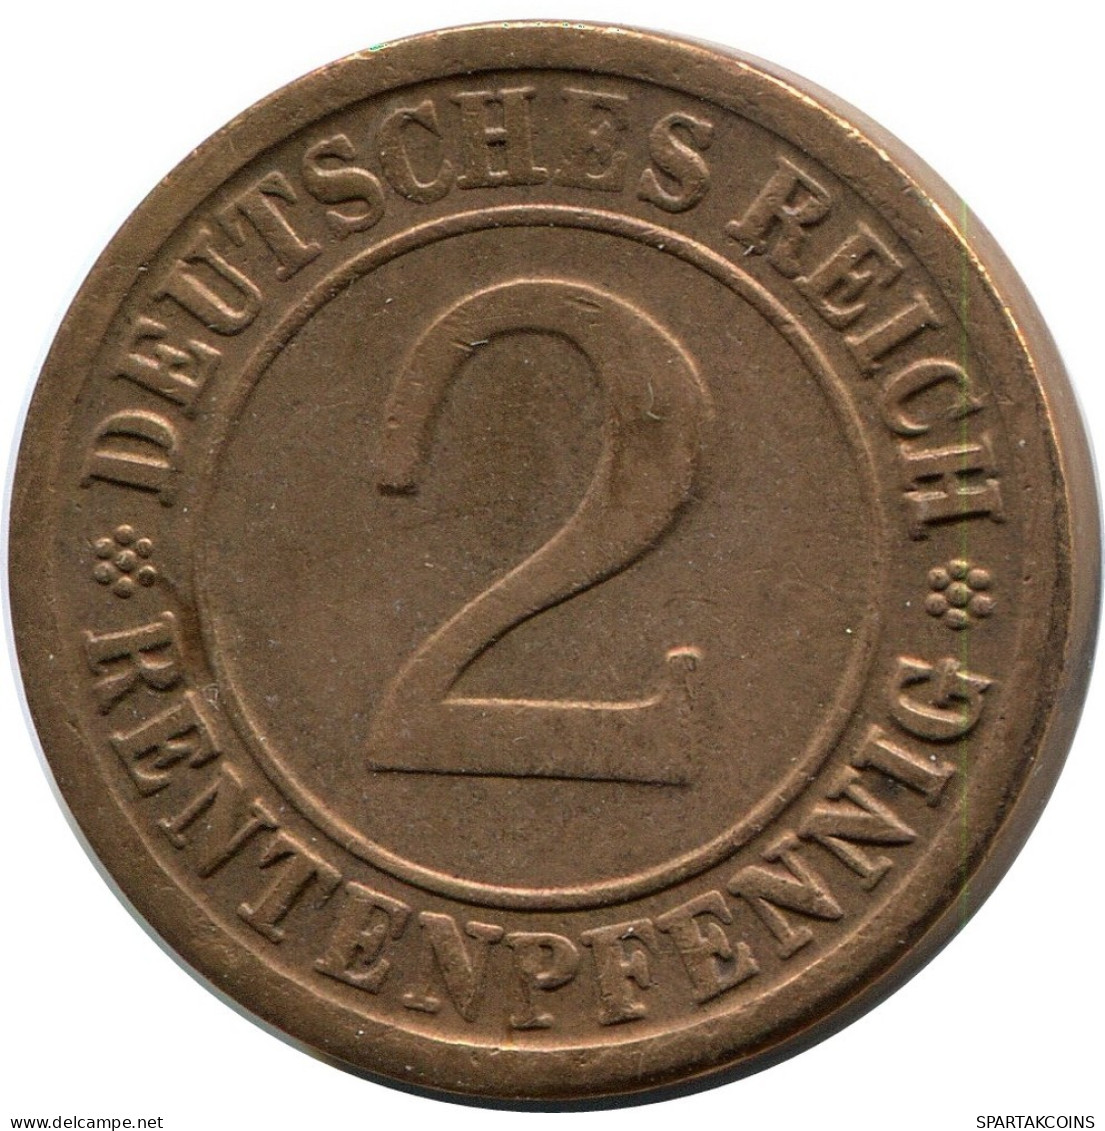 2 RENTENPFENNIG 1924 F GERMANY Coin #DB831.U.A - 2 Rentenpfennig & 2 Reichspfennig